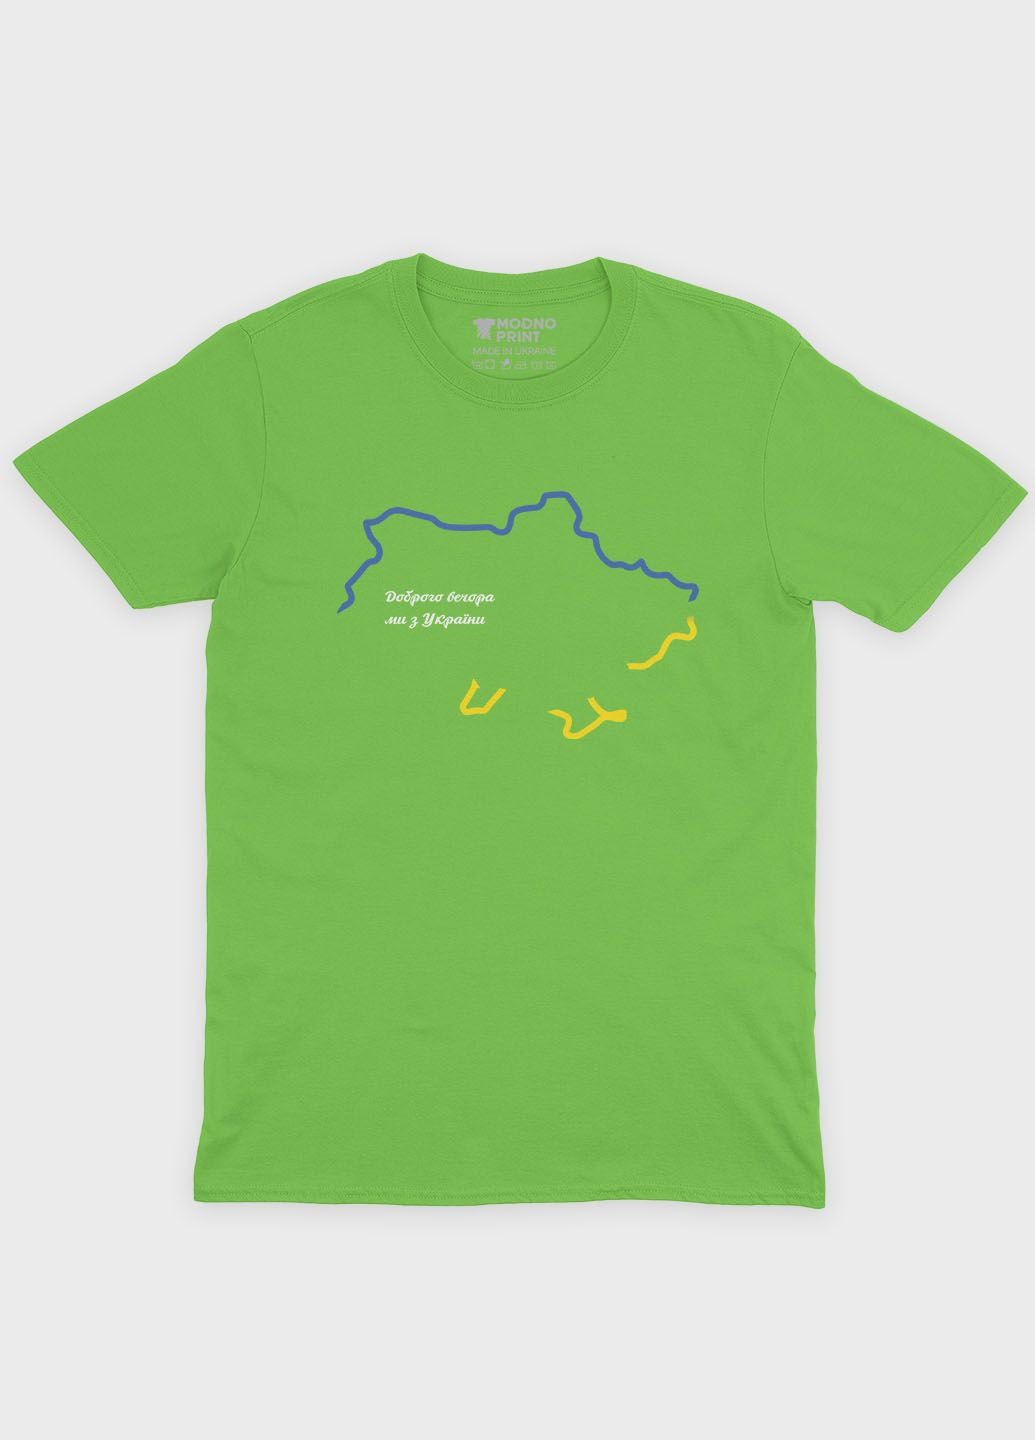 Салатовая мужская футболка с патриотическим принтом карта украины (ts001-1-kiw-005-1-027) Modno